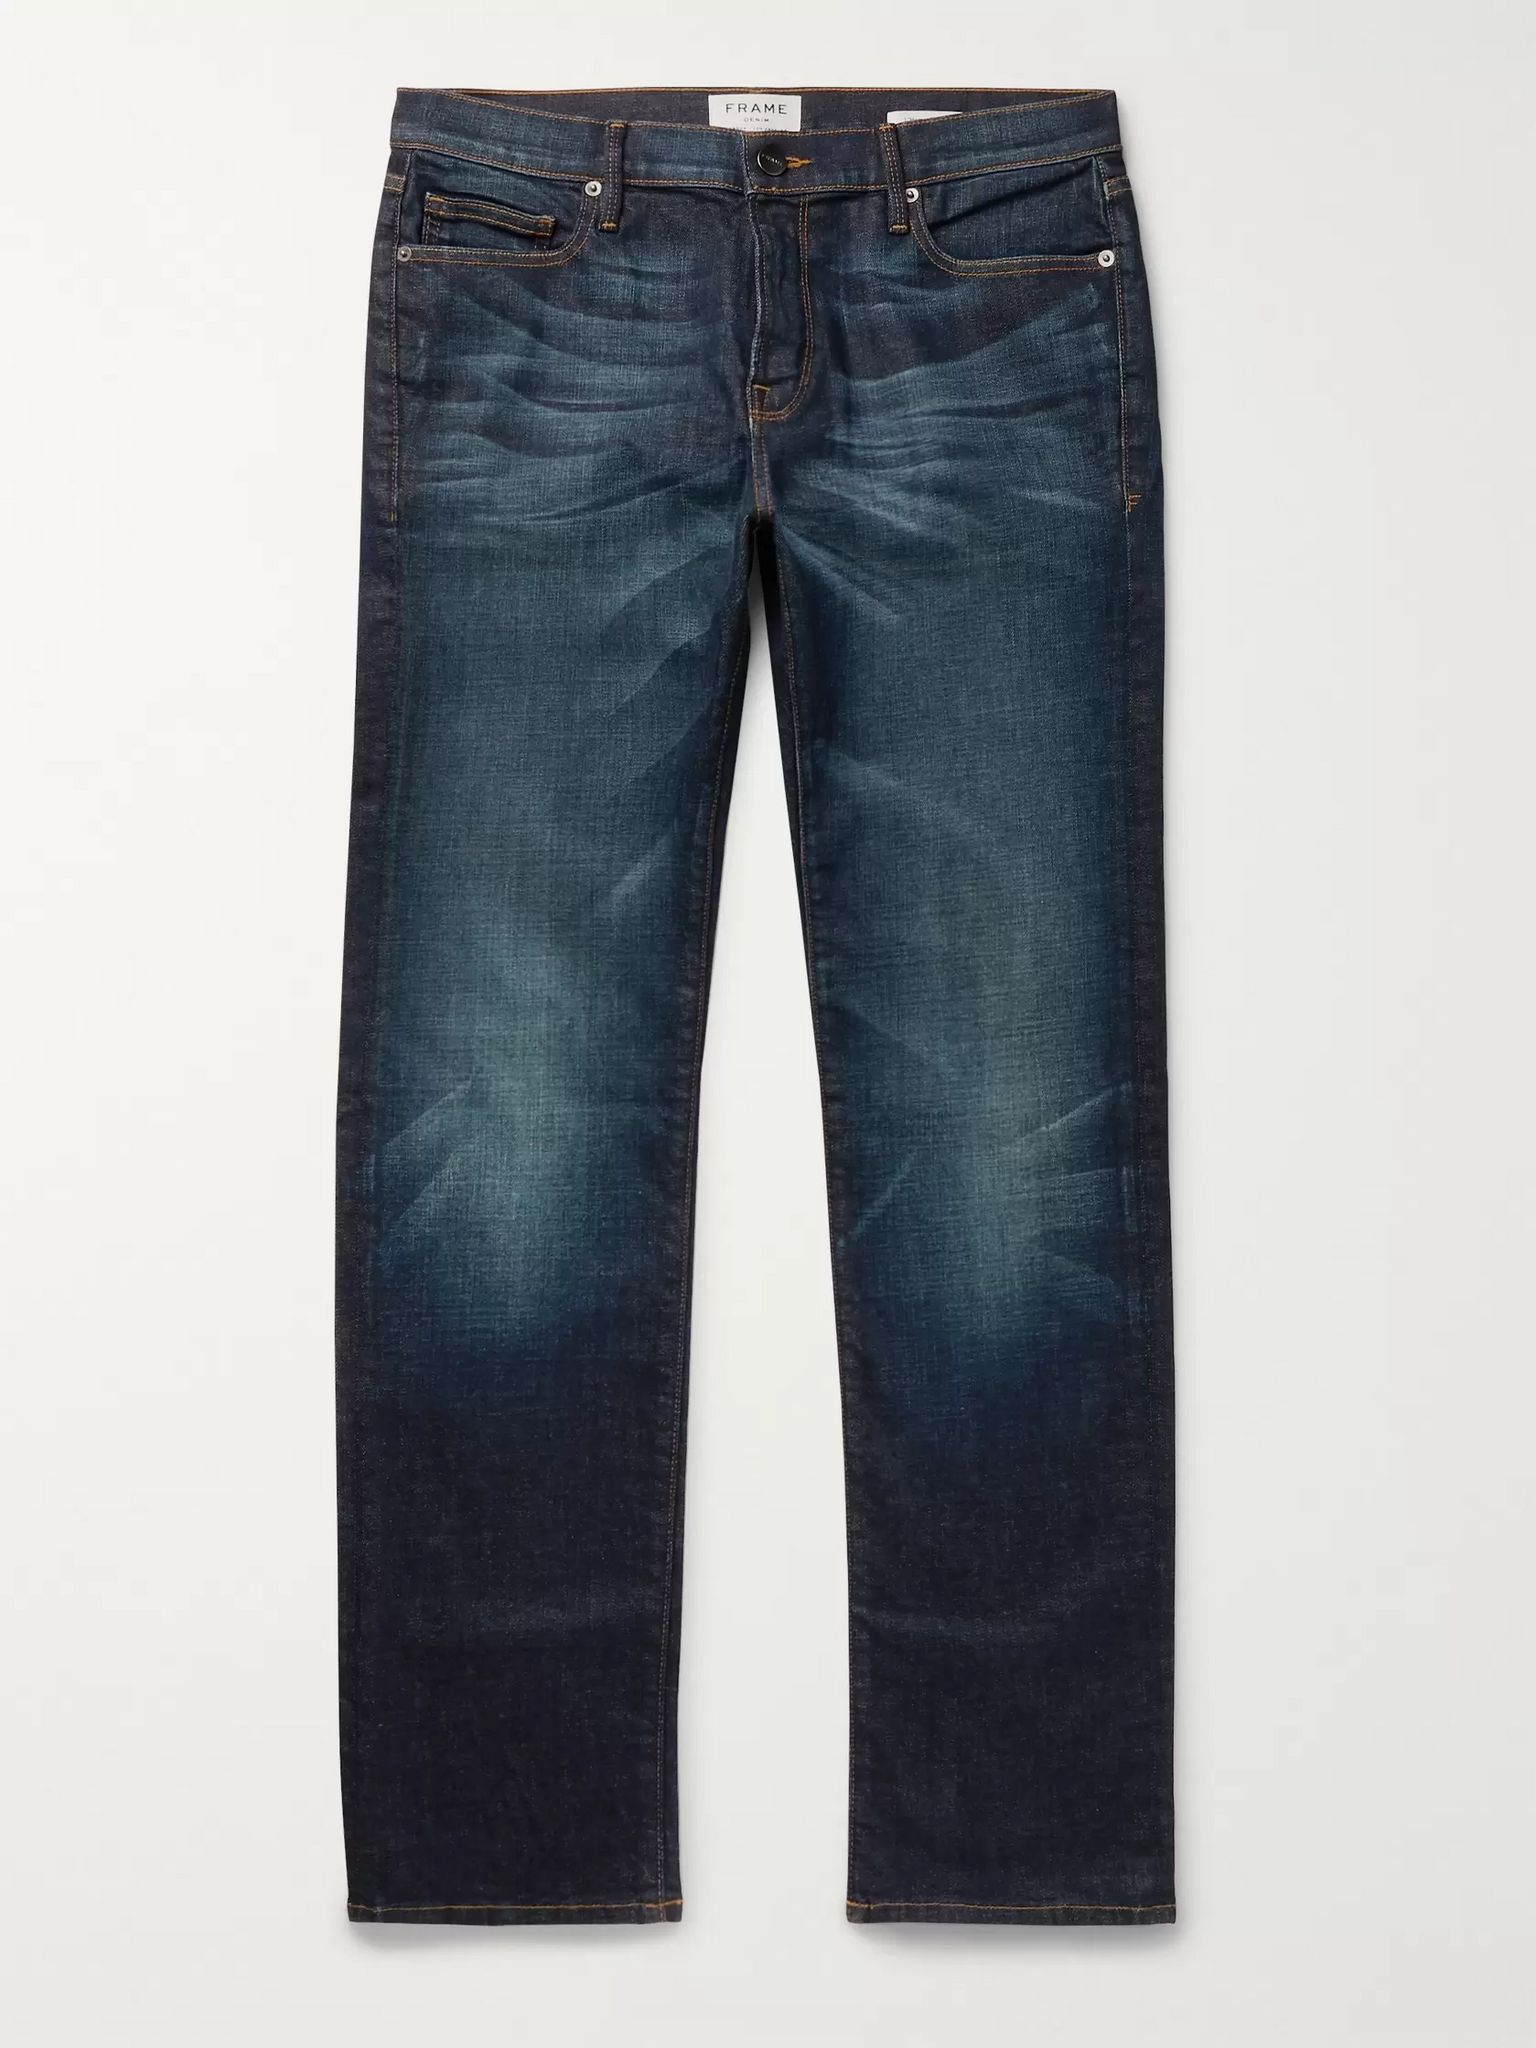 Indigo L'Homme Skinny-Fit Stretch-Denim Jeans | FRAME | MR PORTER